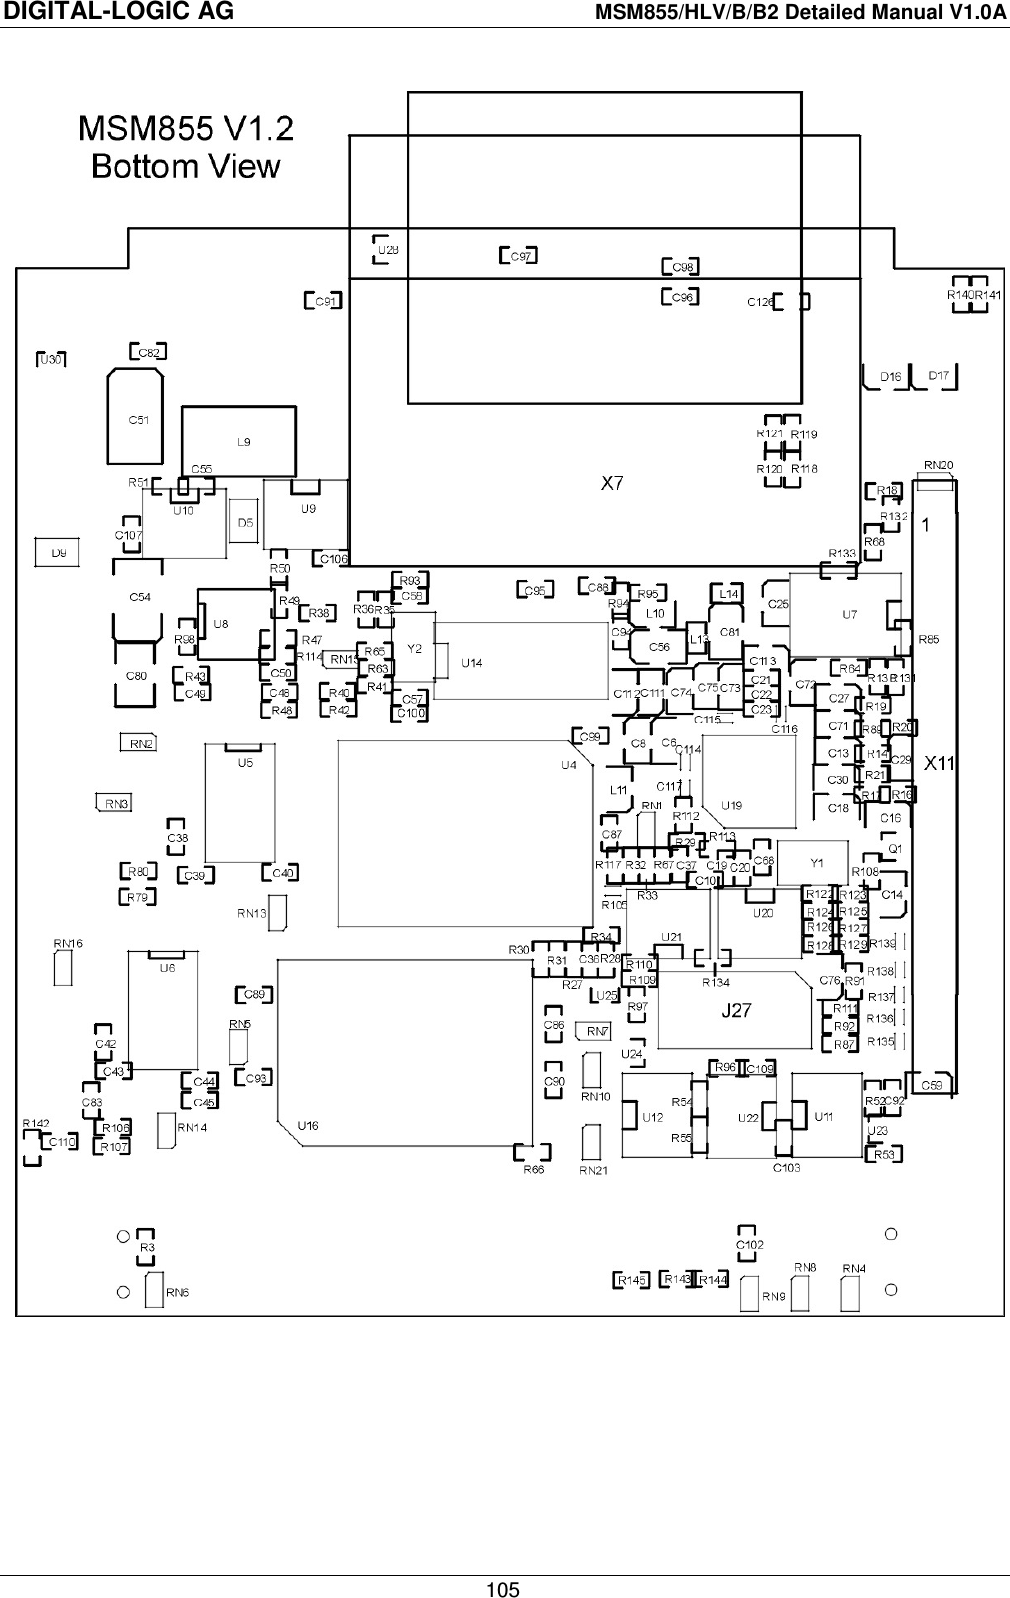 DIGITAL-LOGIC AG    MSM855/HLV/B/B2 Detailed Manual V1.0A    105    